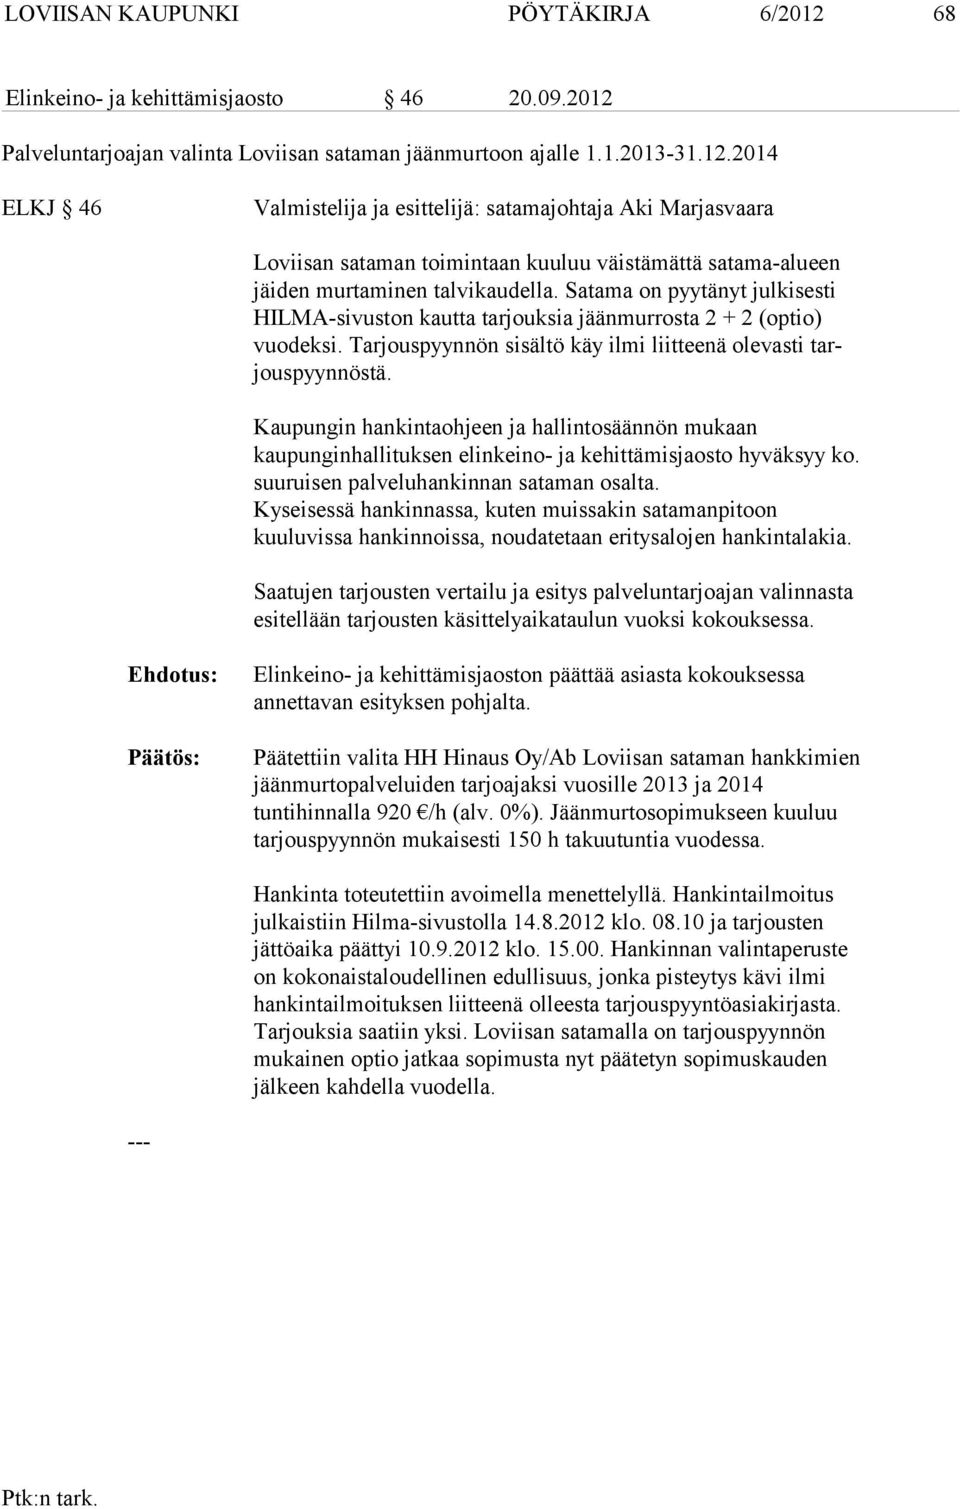 Palveluntarjoajan valinta Loviisan sataman jäänmurtoon ajalle 1.1.2013-31.12.